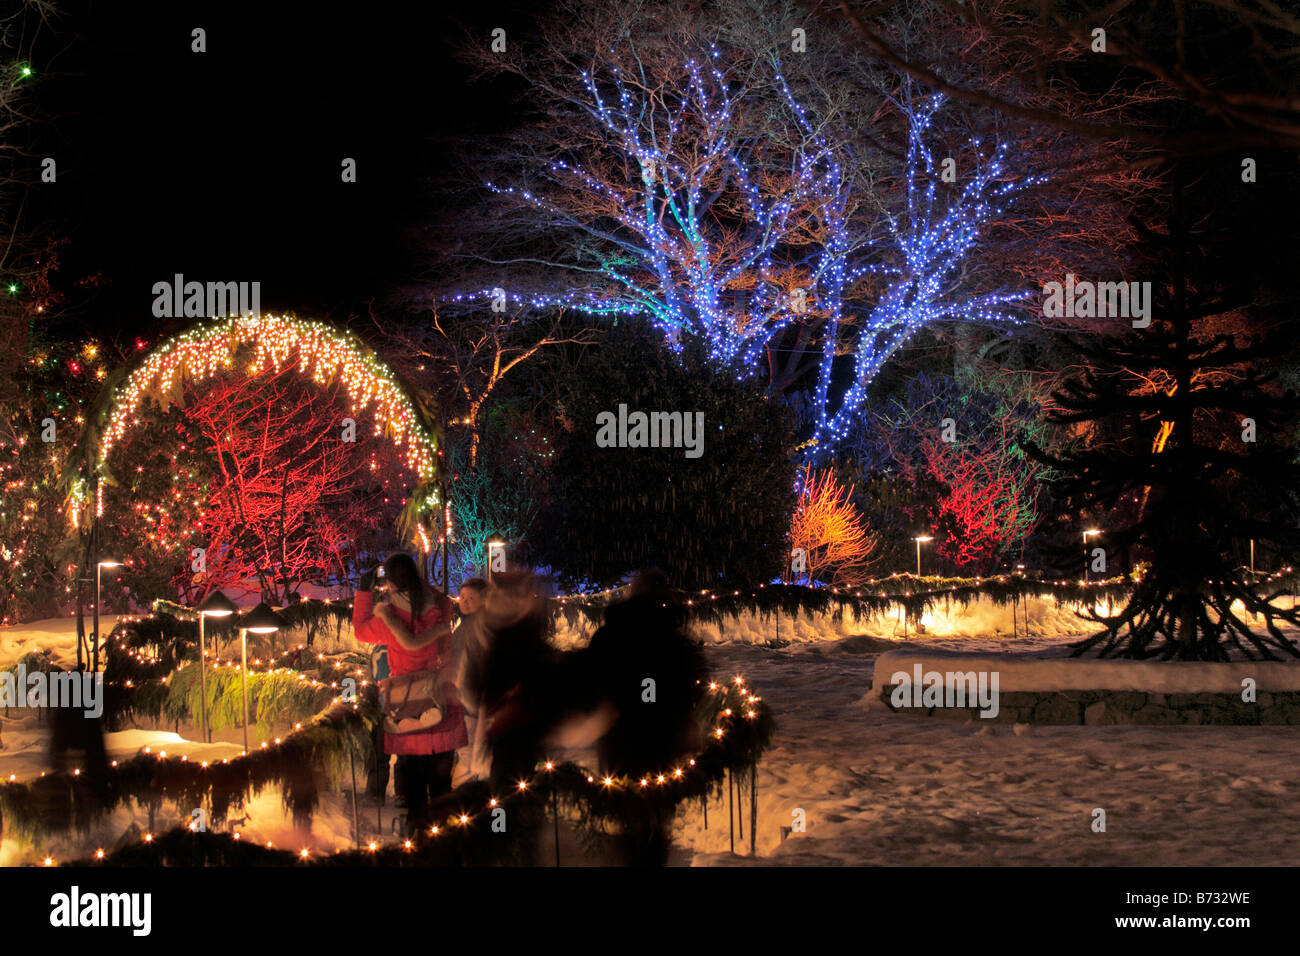 Jährliche Weihnachtsbeleuchtung in der Nacht Butchart Gardens Victoria British Columbia Kanada Stockfoto